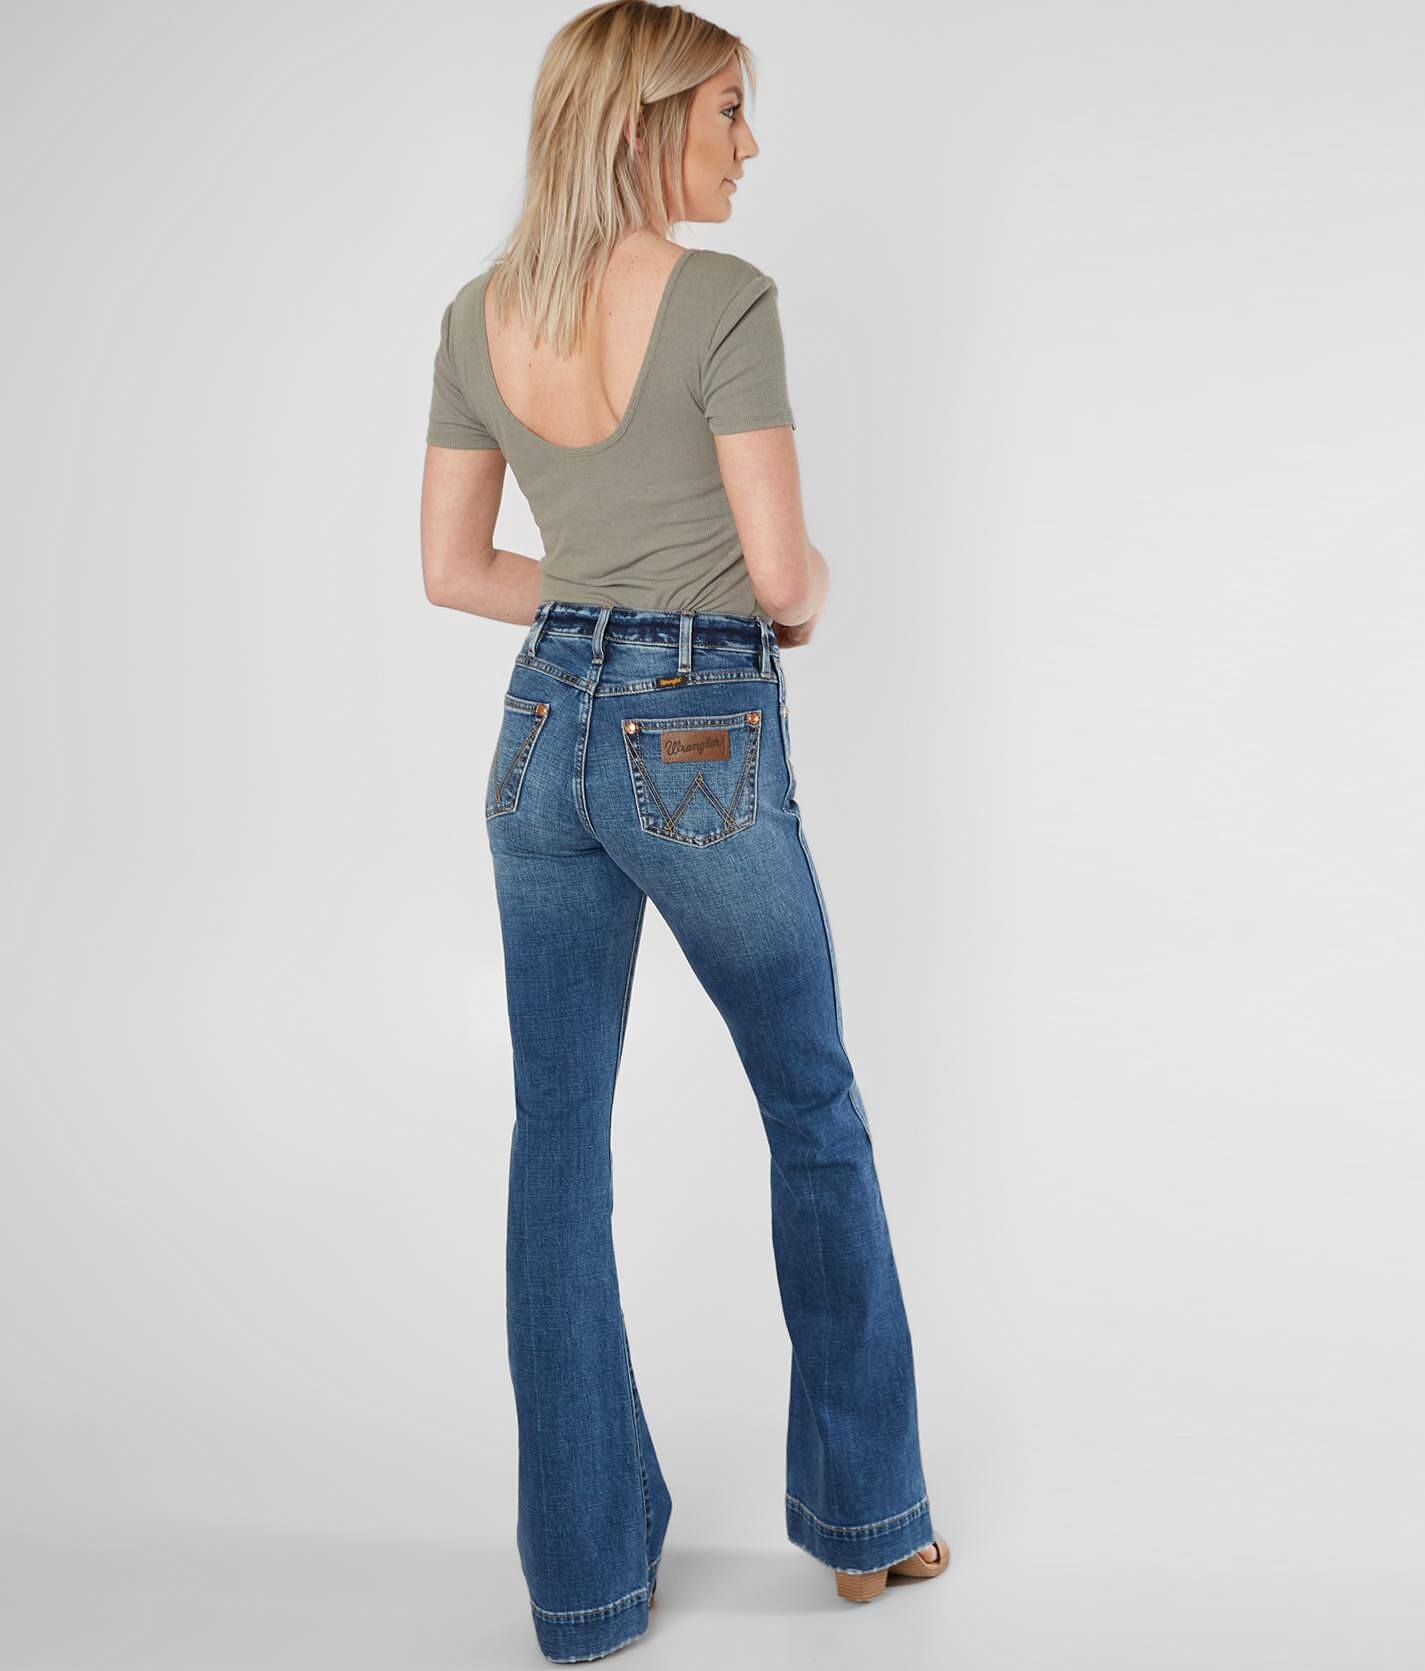 wrangler willow jeans